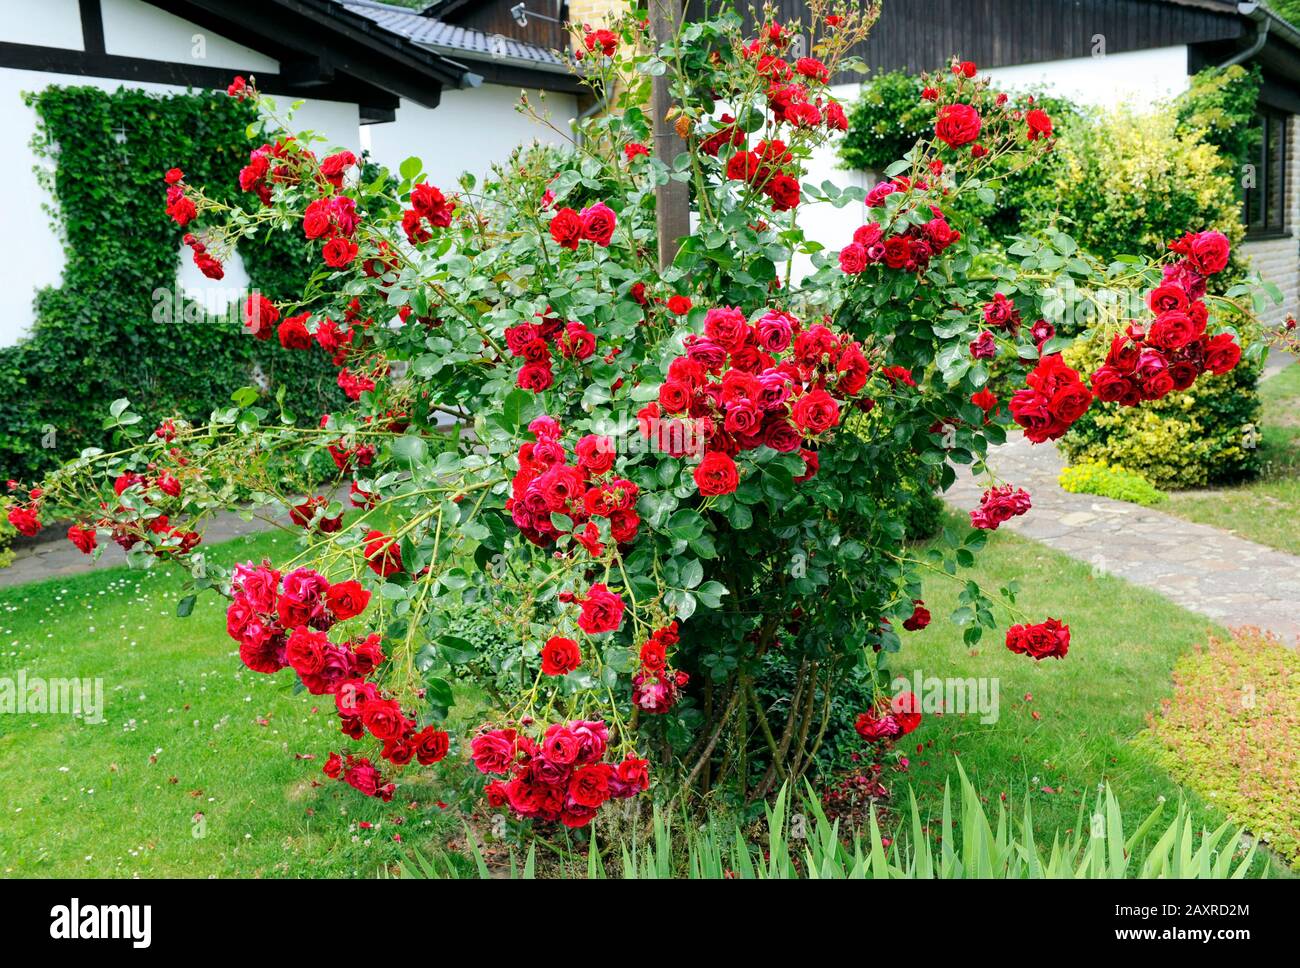 L'escalade Rose Sympathie floraison une deuxième fois en rouge foncé du début de l'été à la fin du printemps sur une aide à l'escalade dans le jardin Banque D'Images